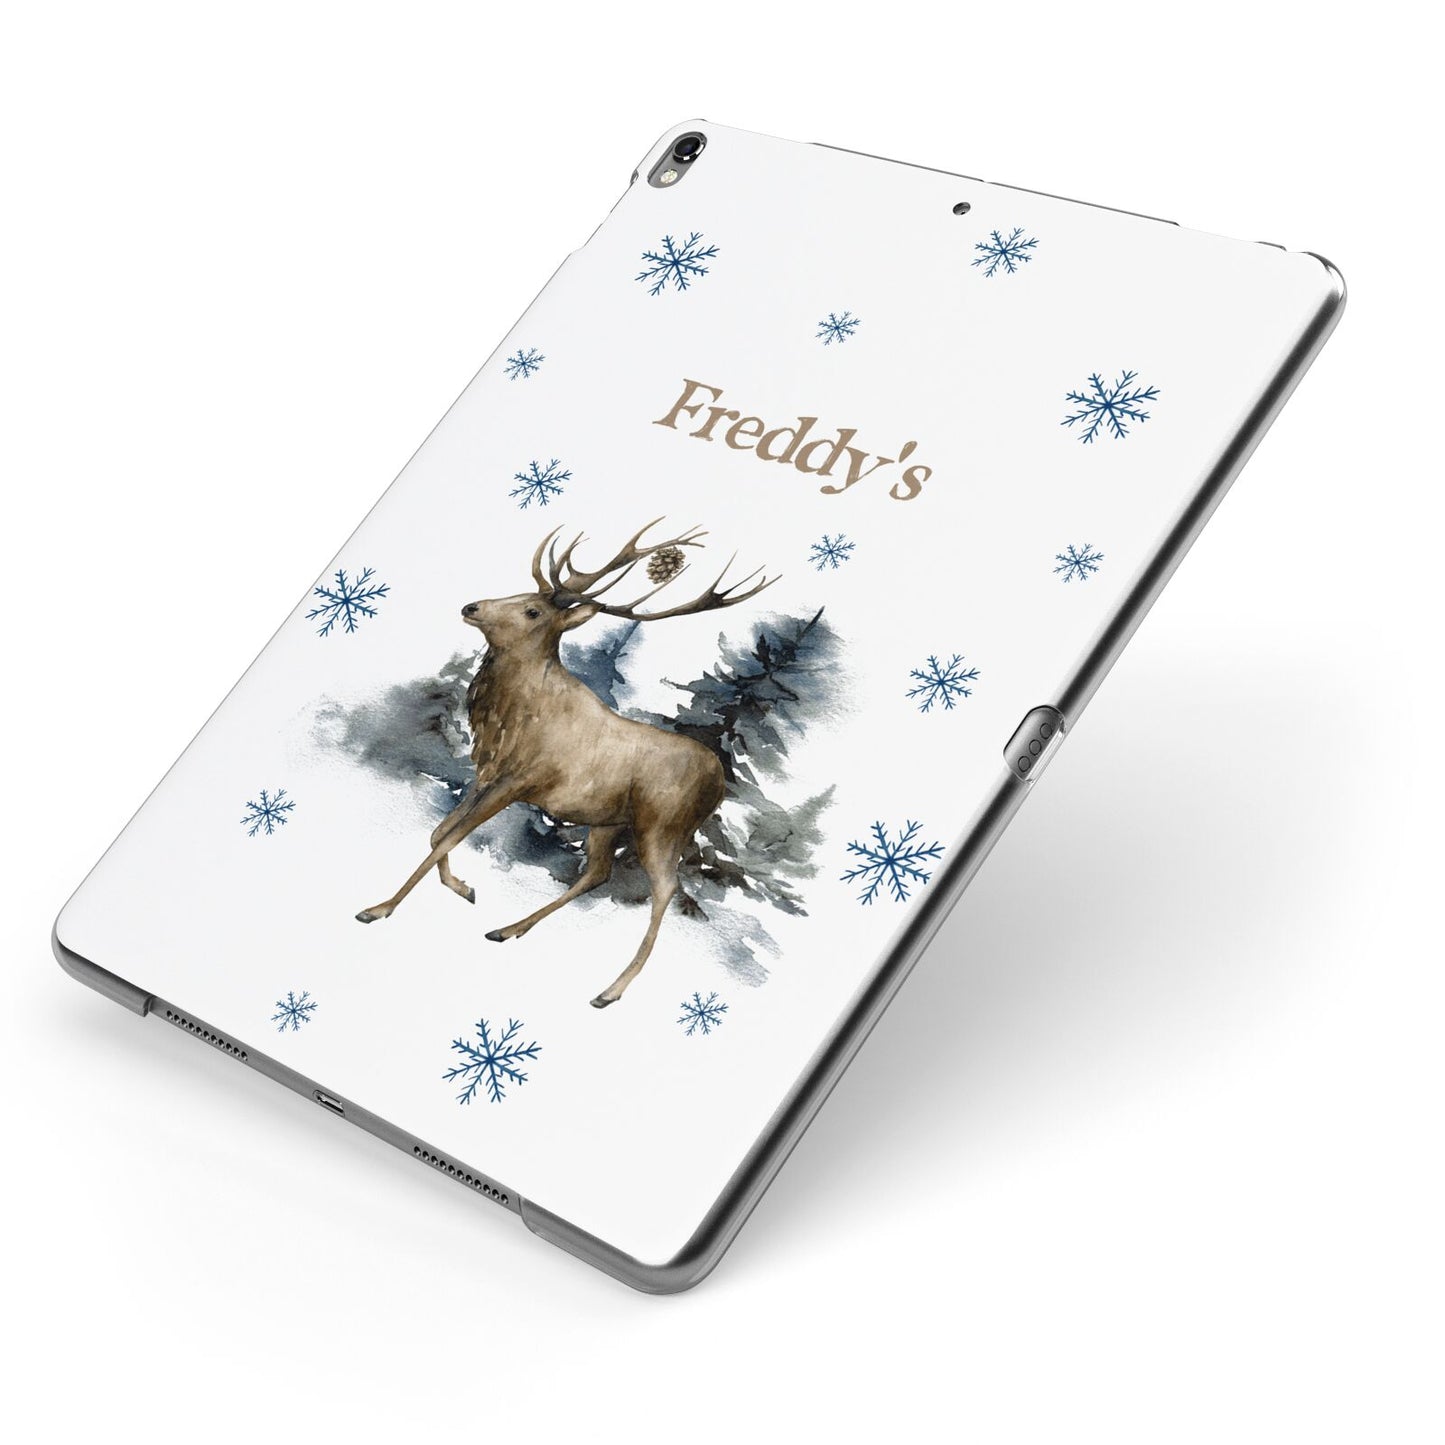 Personalised Name Reindeer Apple iPad Case on Grey iPad Side View